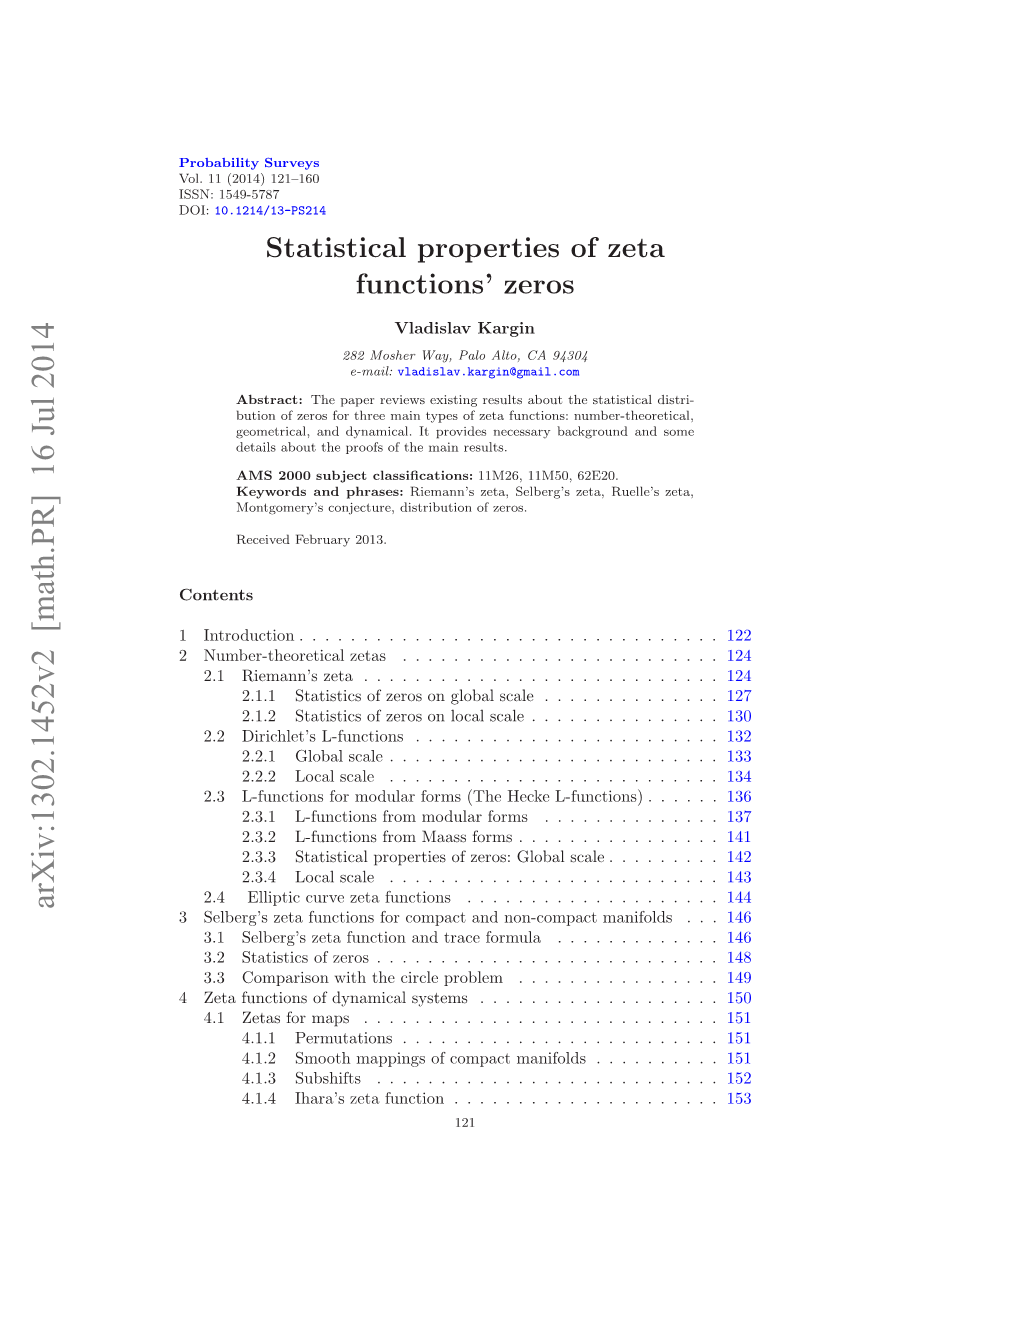 Statistical Properties of Zeta Functions' Zeros